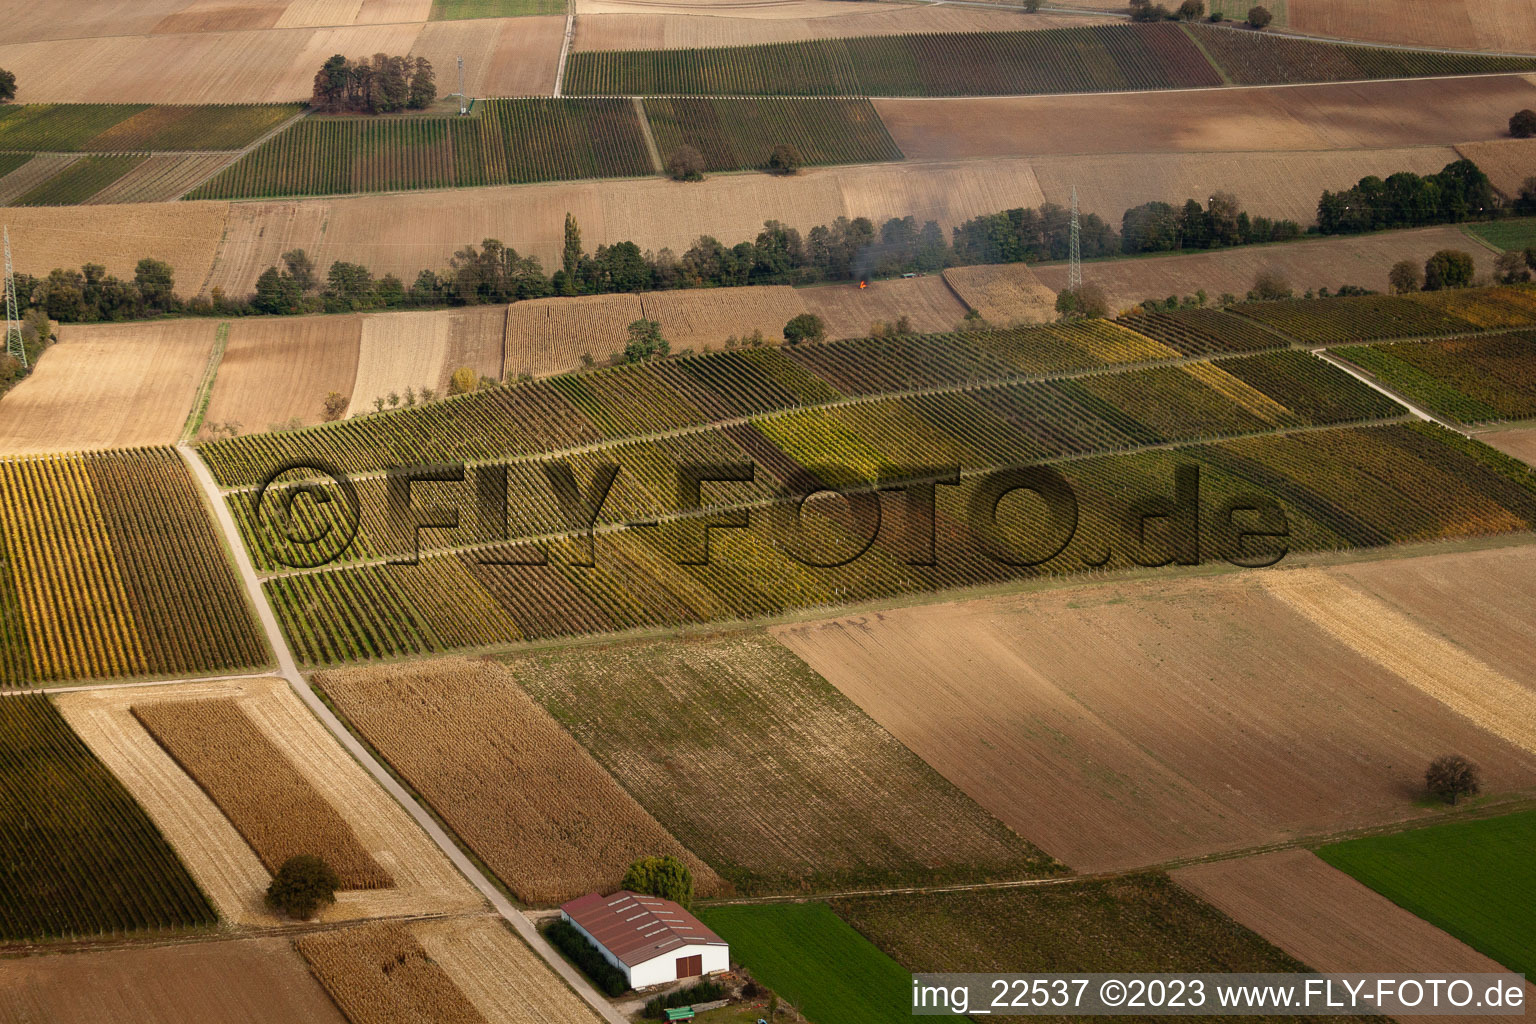 Vue aérienne de Vignobles entre Freckenfeld et Winden à Freckenfeld dans le département Rhénanie-Palatinat, Allemagne